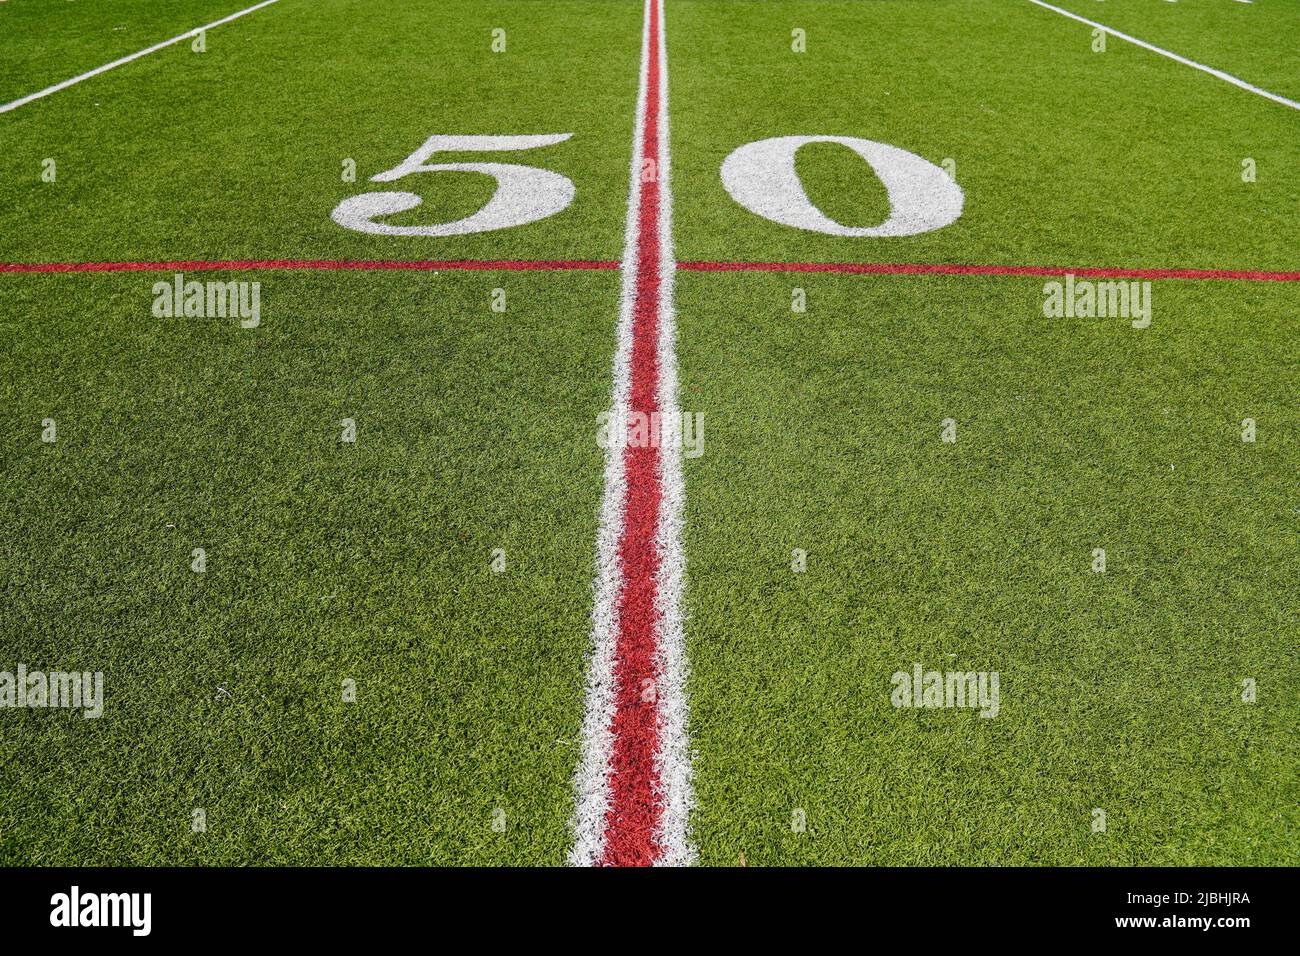 Blick auf die 50-Meter-Linie auf einem American Football-Feld mit Kunstrasen Stockfoto